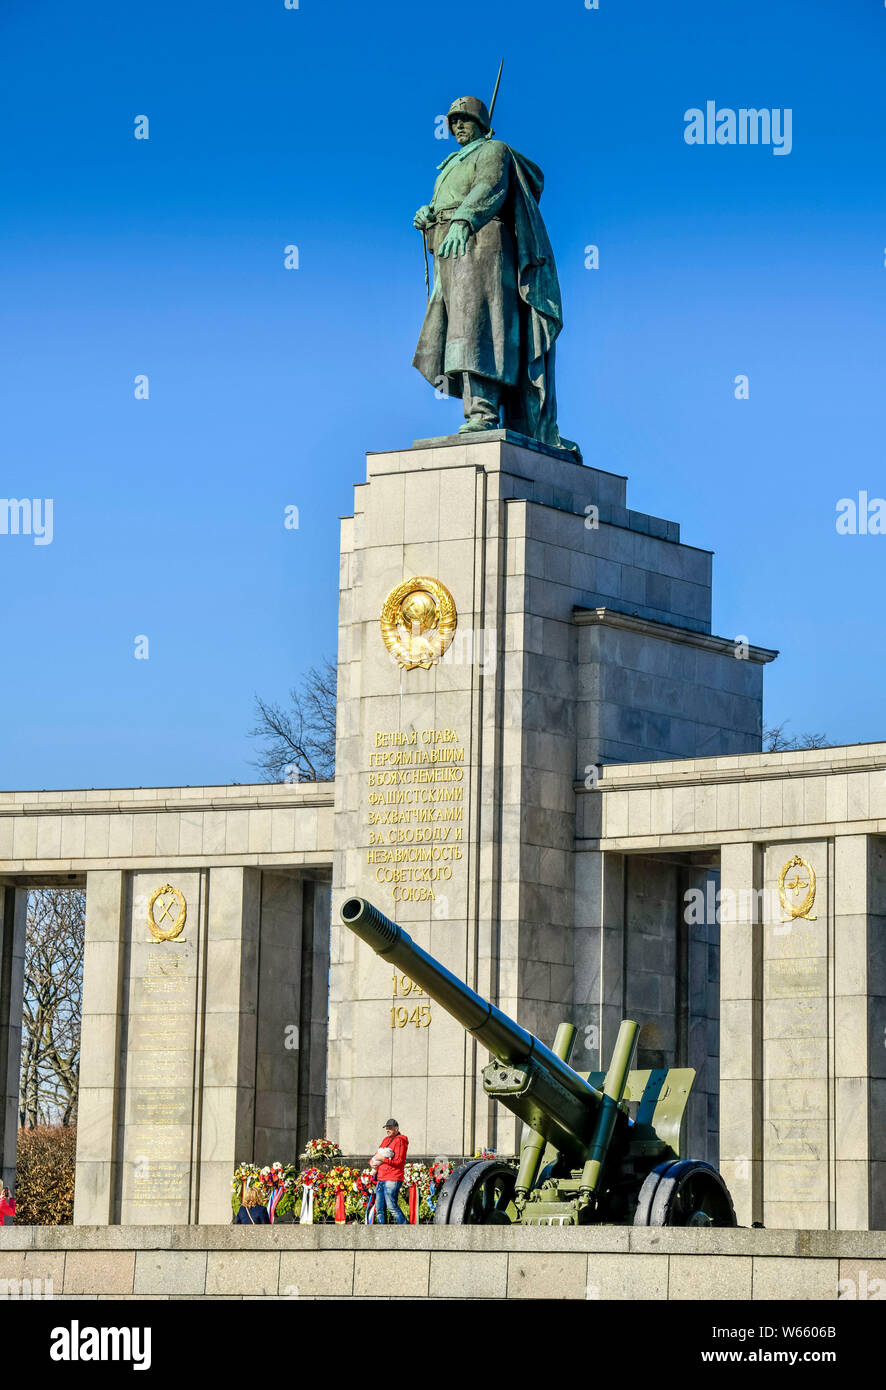 Sowjetisches Ehrenmal, Strasse des 17. Juni, Tiergarten, Berlin, Deutschland Stock Photo